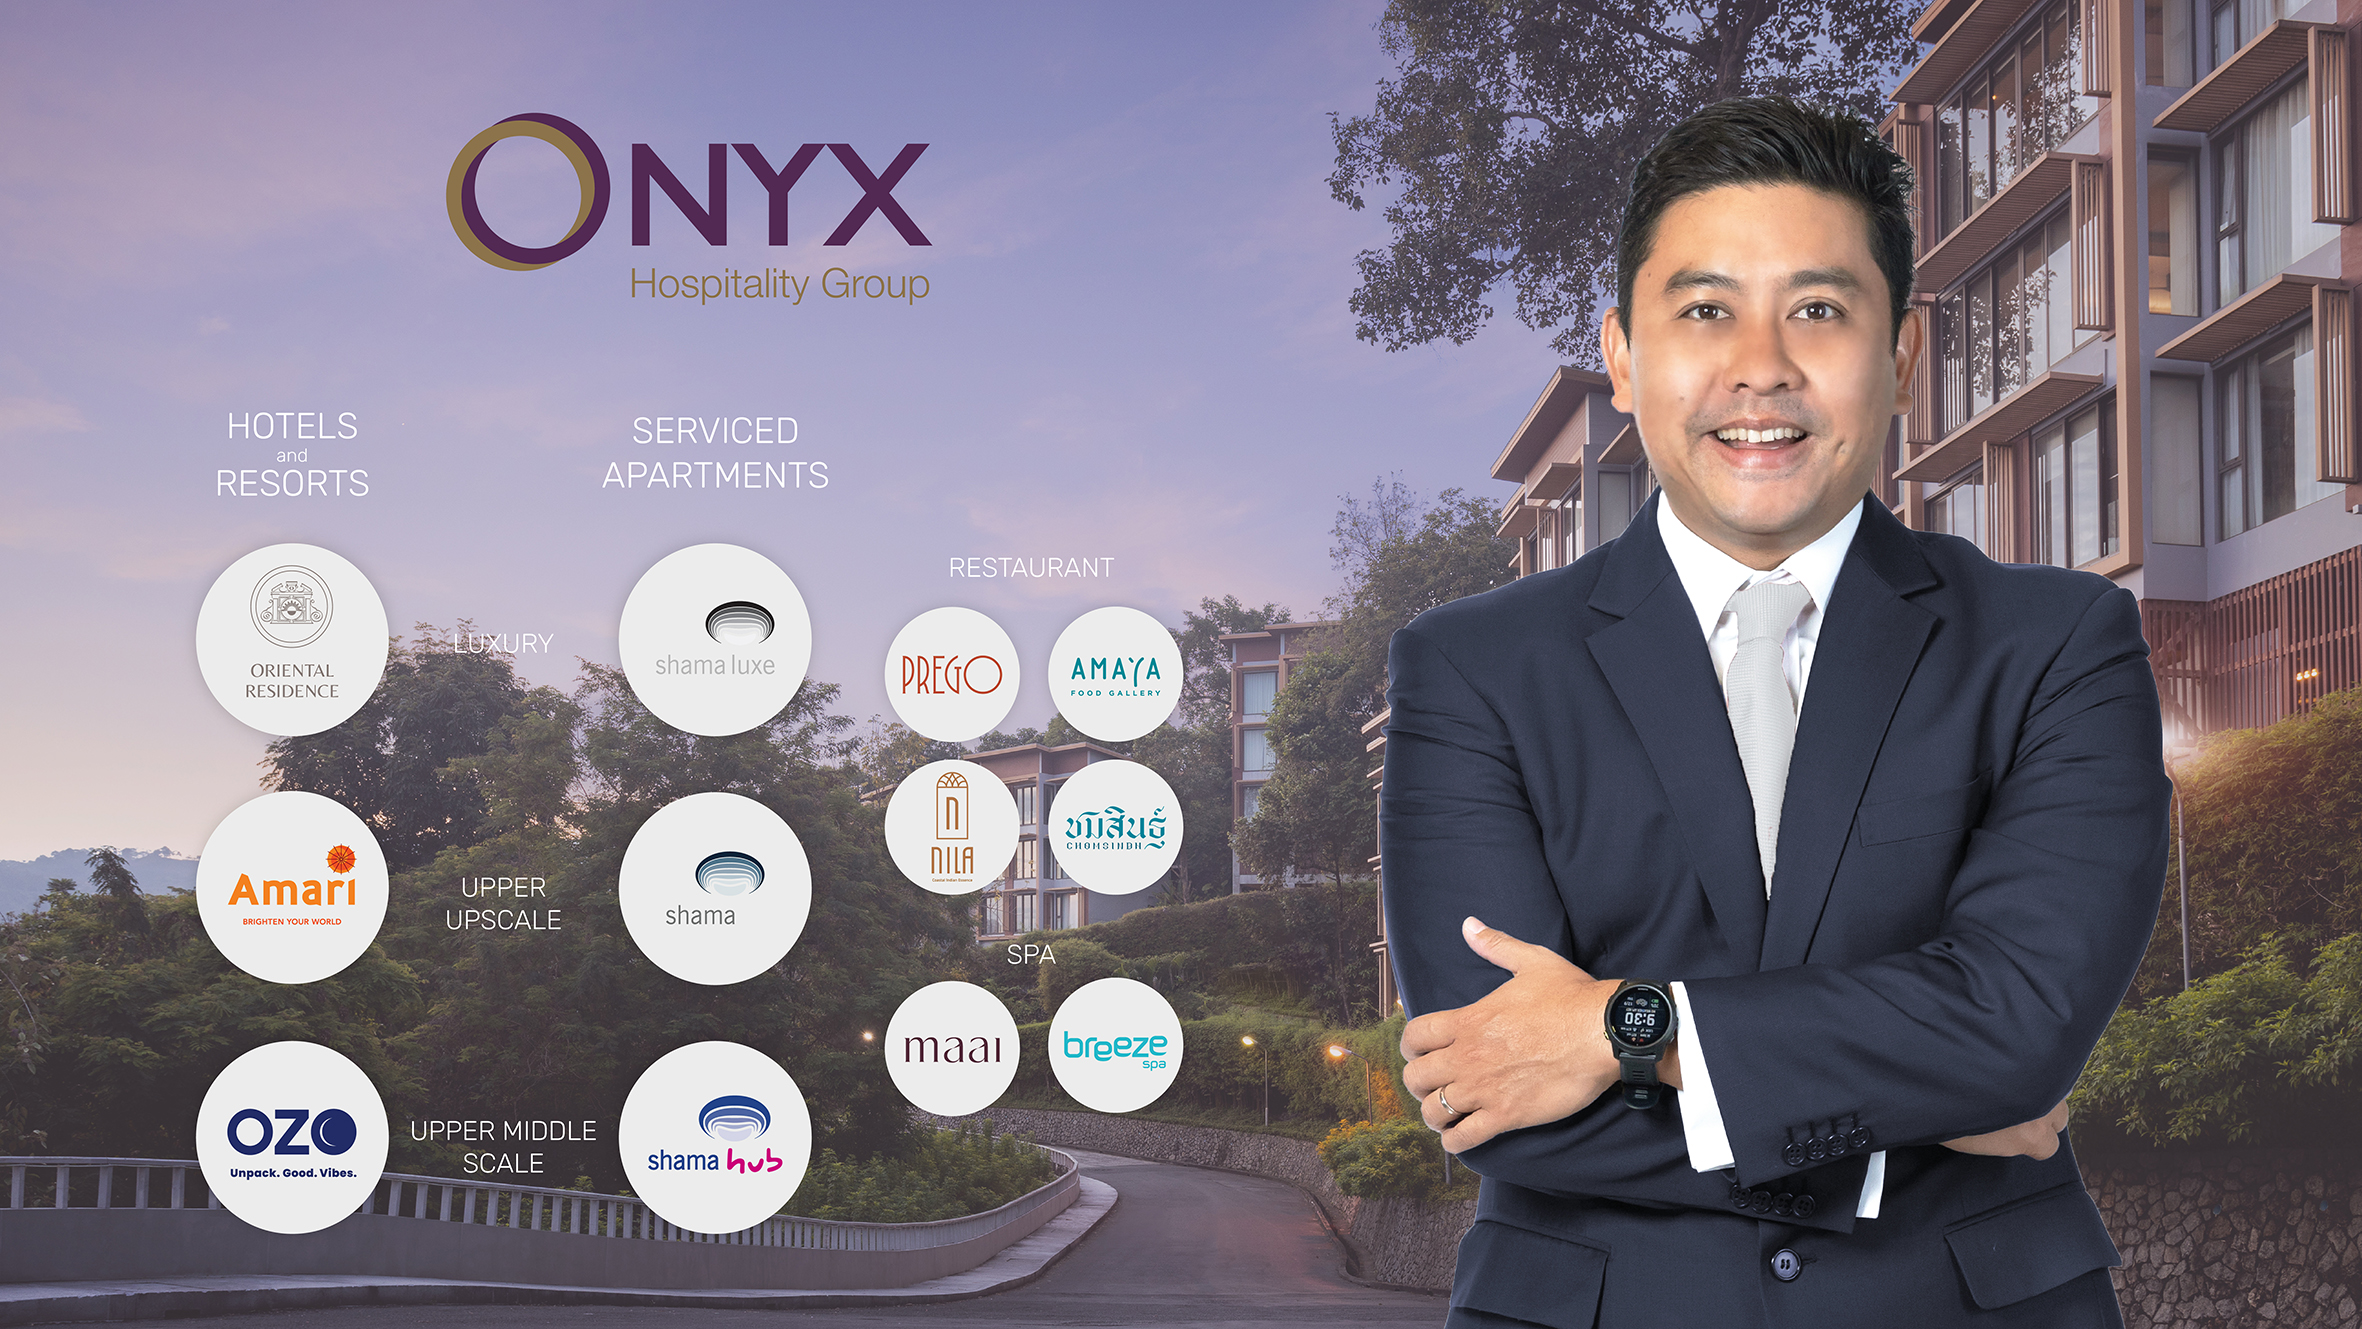 ONYX Brand Portfolio